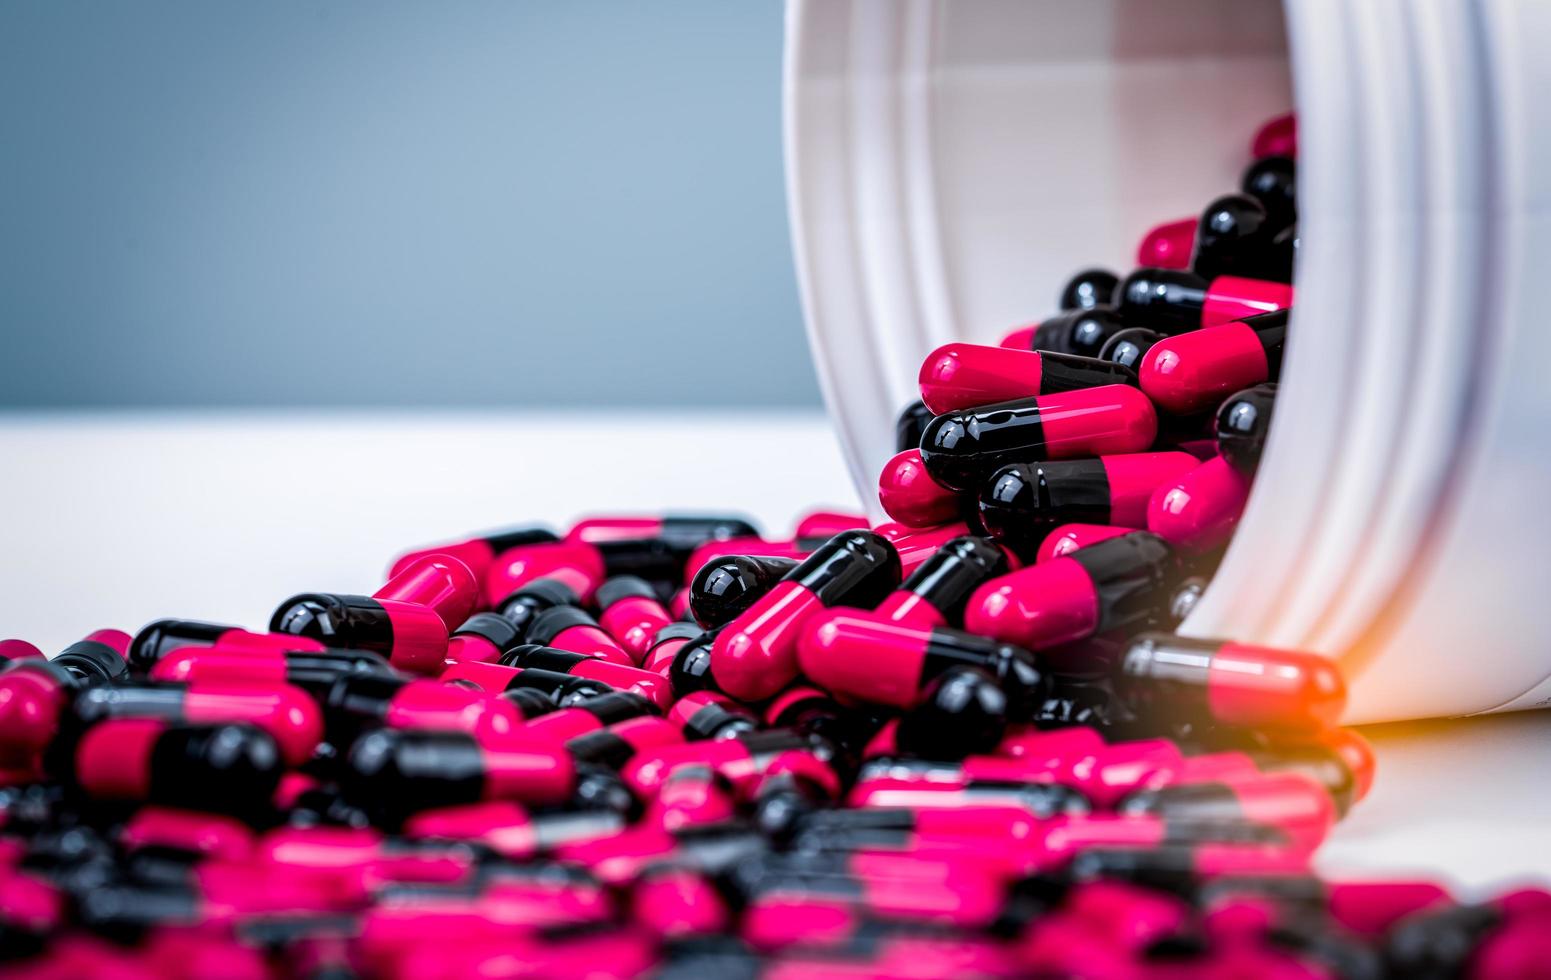 rosa, svarta kapslar piller spills ut från vit plastflaska behållare. receptbelagt läkemedel. antibiotikaresistens. antimikrobiella kapselpiller. läkemedelsindustri. apotek bakgrund. foto